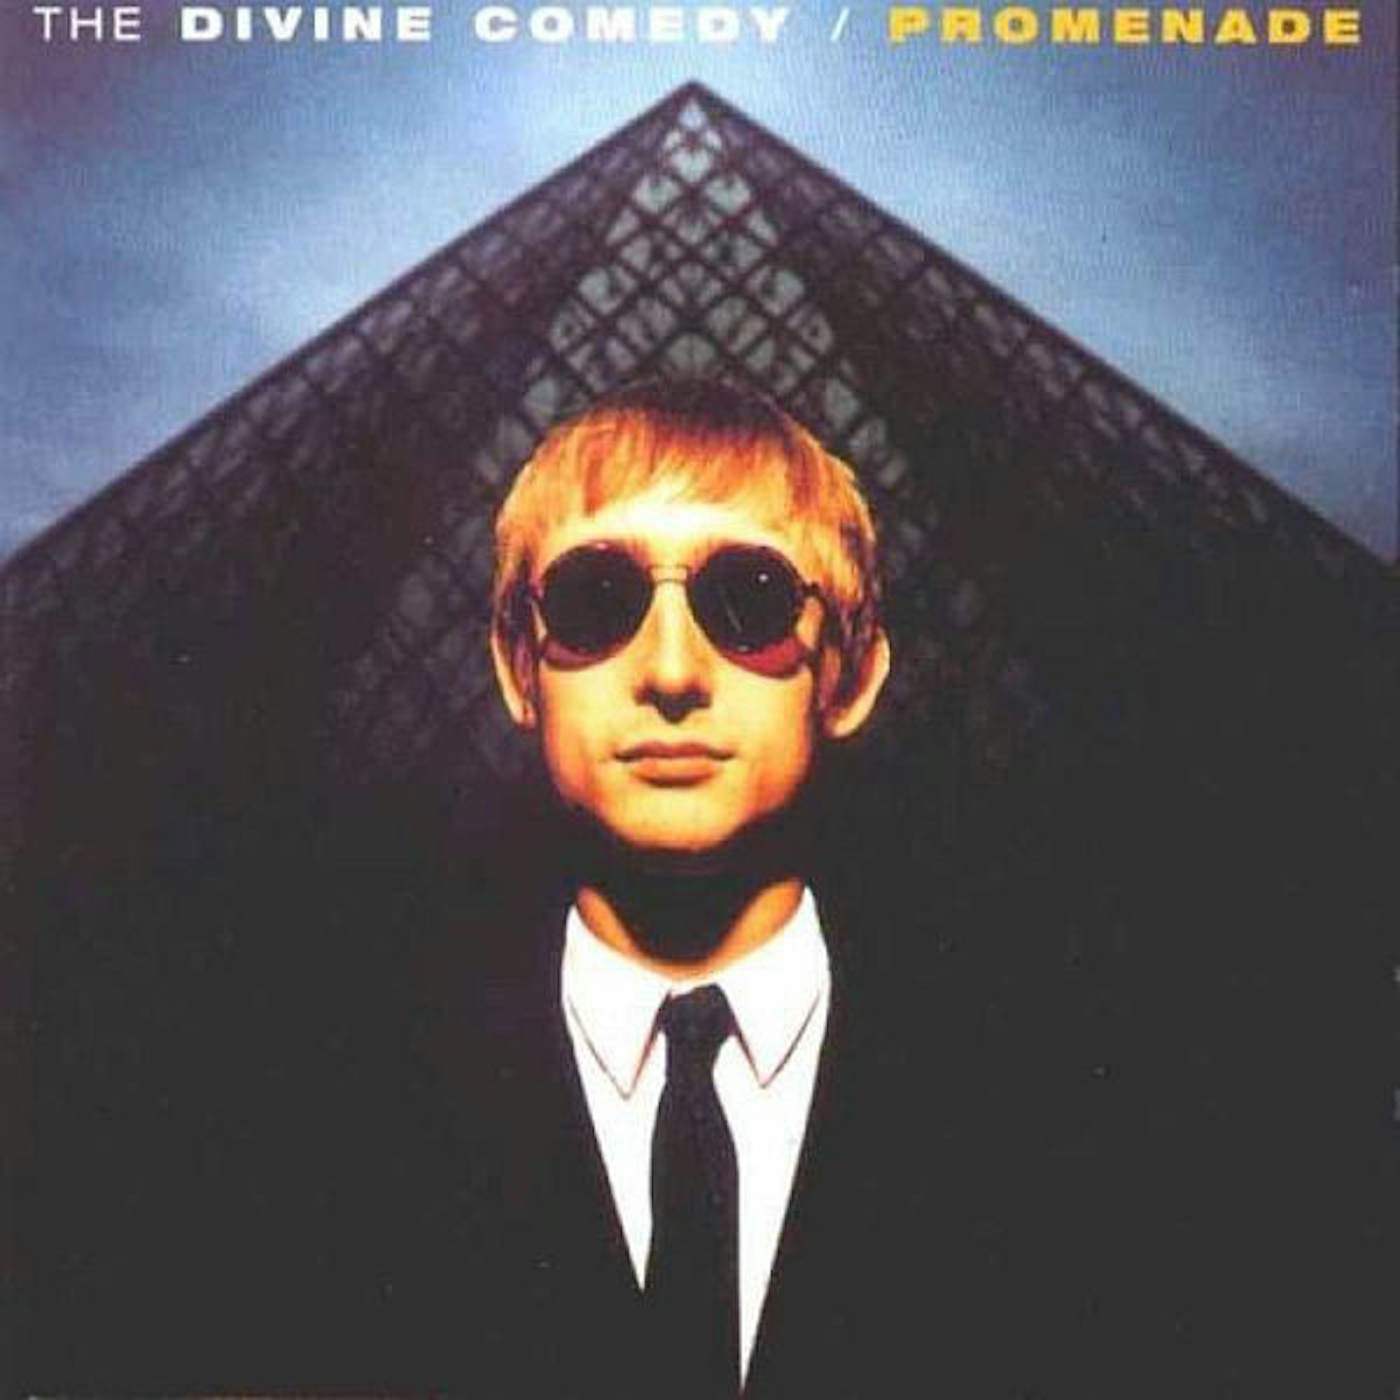 The Divine Comedy Promenade Vinyl Record